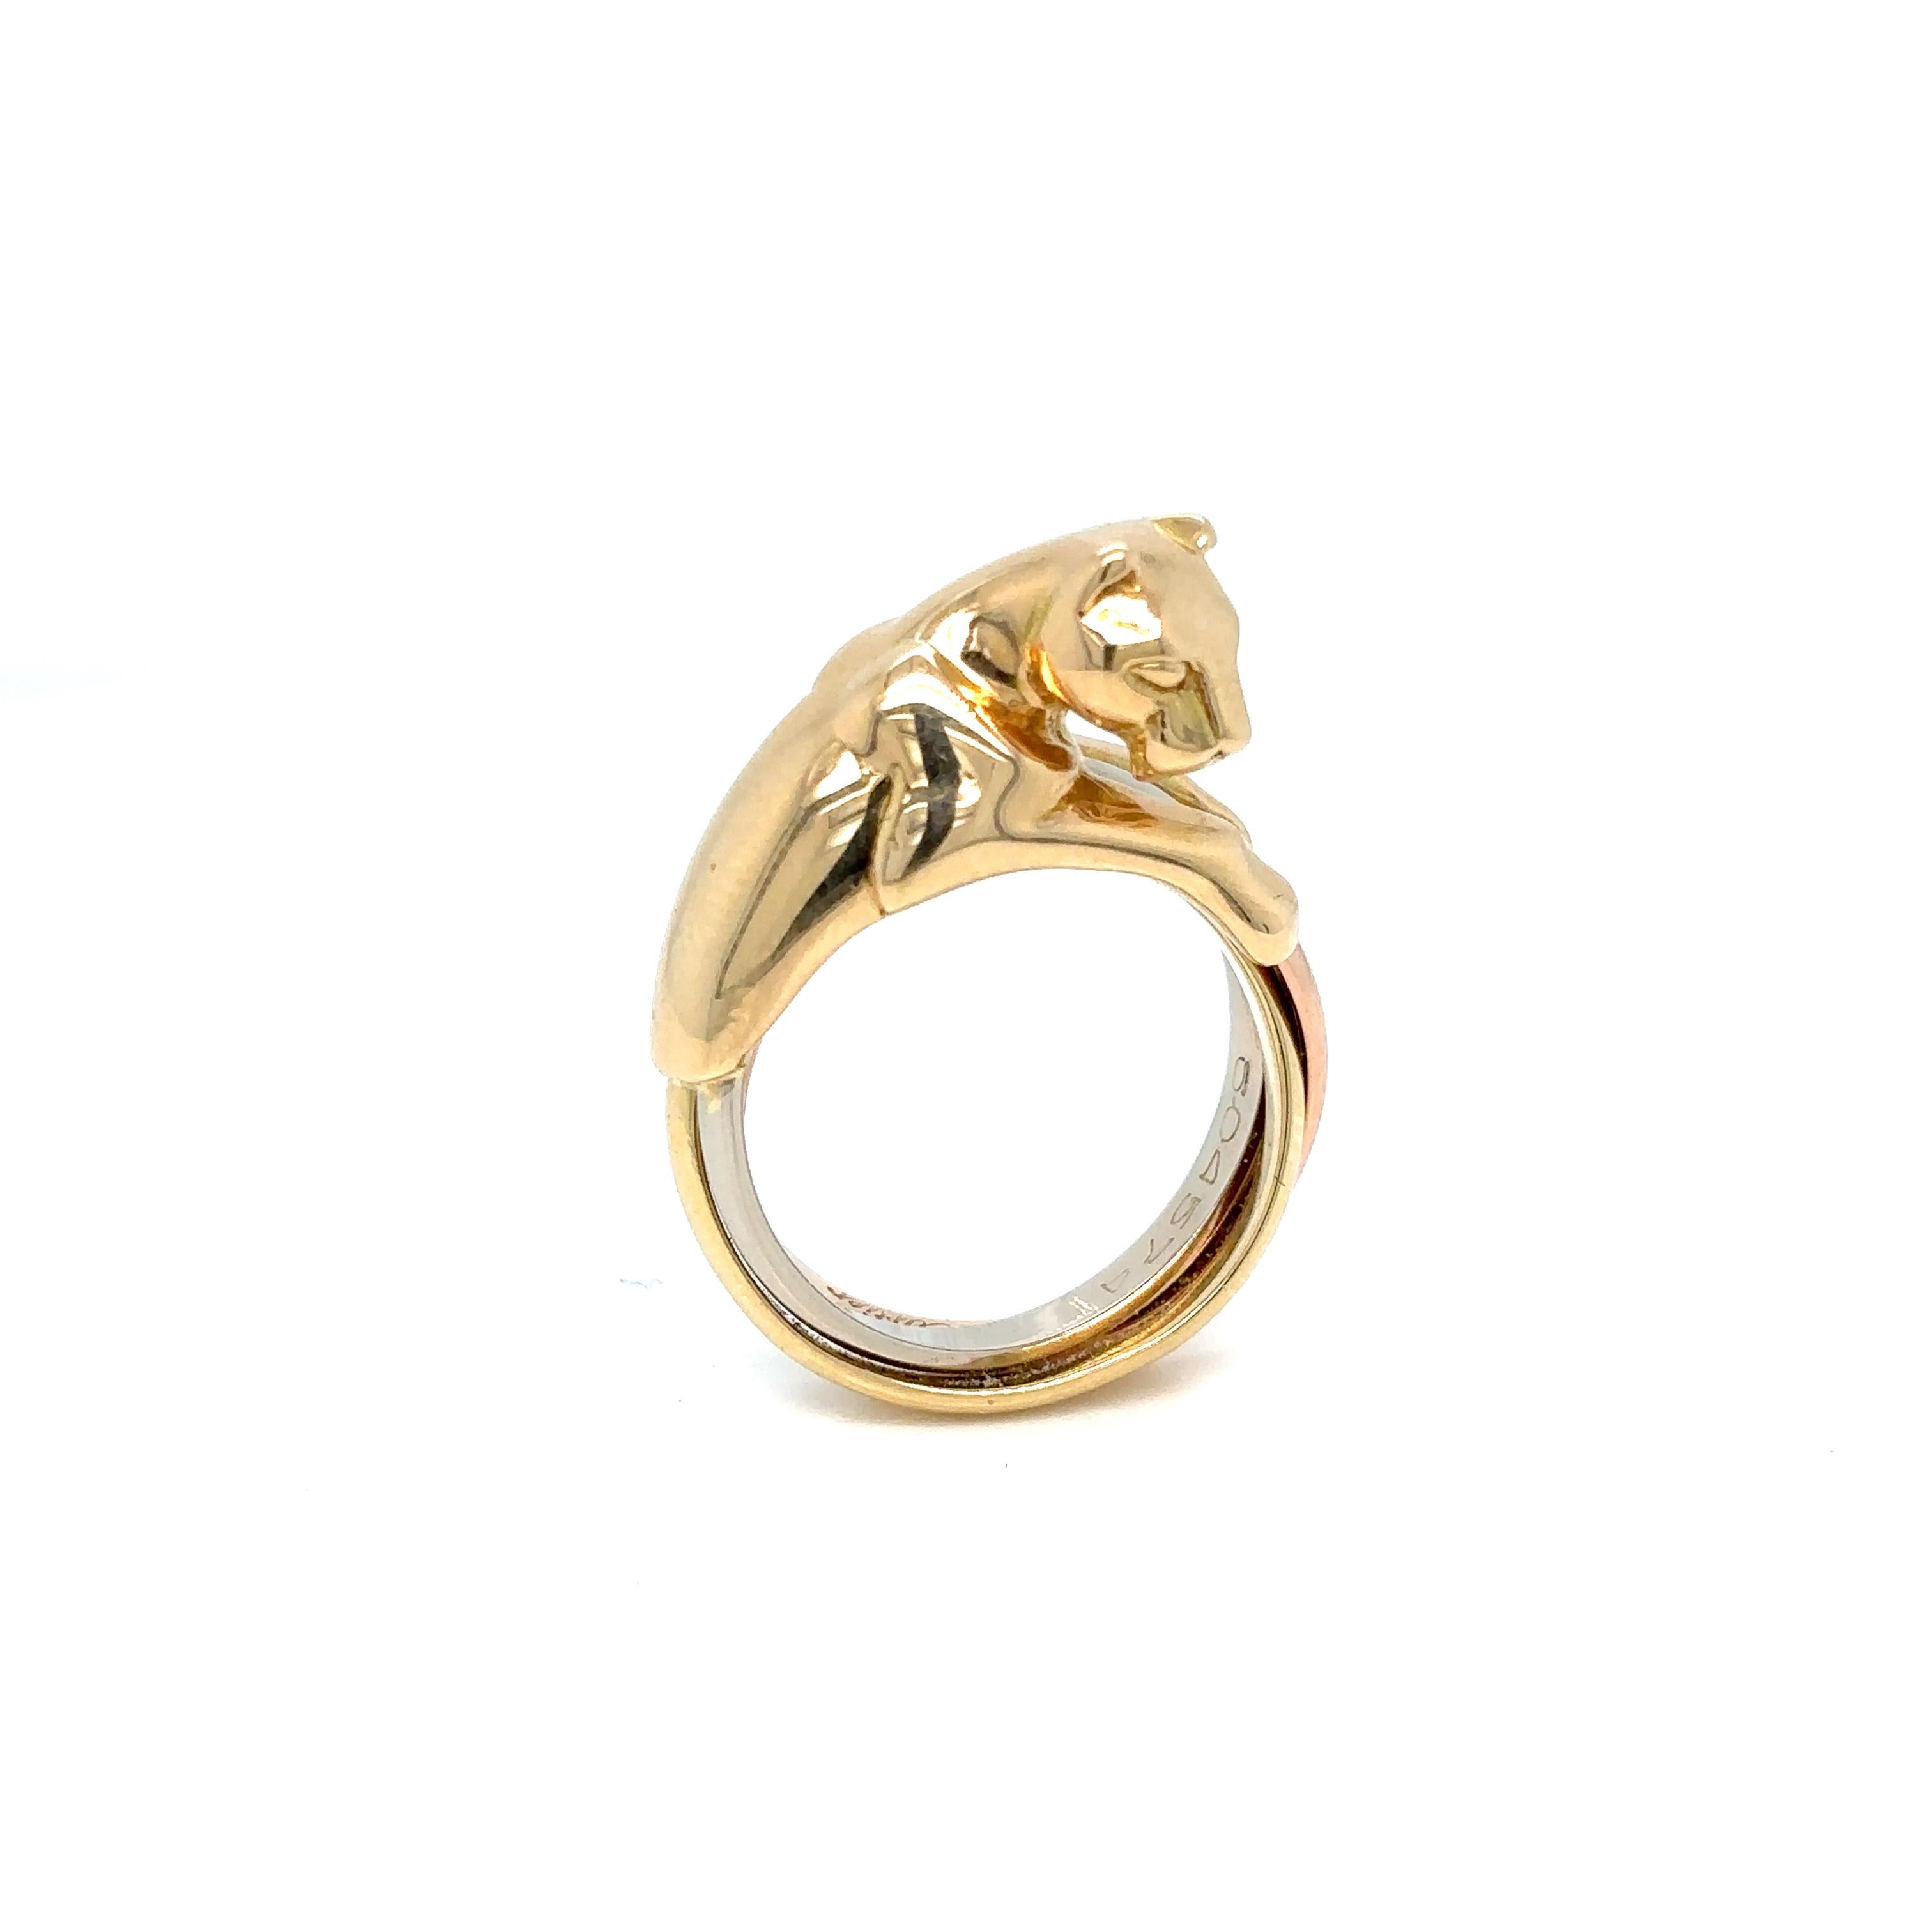 Ikonischer Ring Panthère de Cartier, Gelbgold 750/1000. Es verfügt über ein dreifarbiges Goldband.
Hergestellt in Frankreich, um 1980

Signiert Cartier 750, nummeriert, Adler und Goldschmiedekopfpunze auf dem Außenring.

Gewicht 13,6 Gramm
Größe